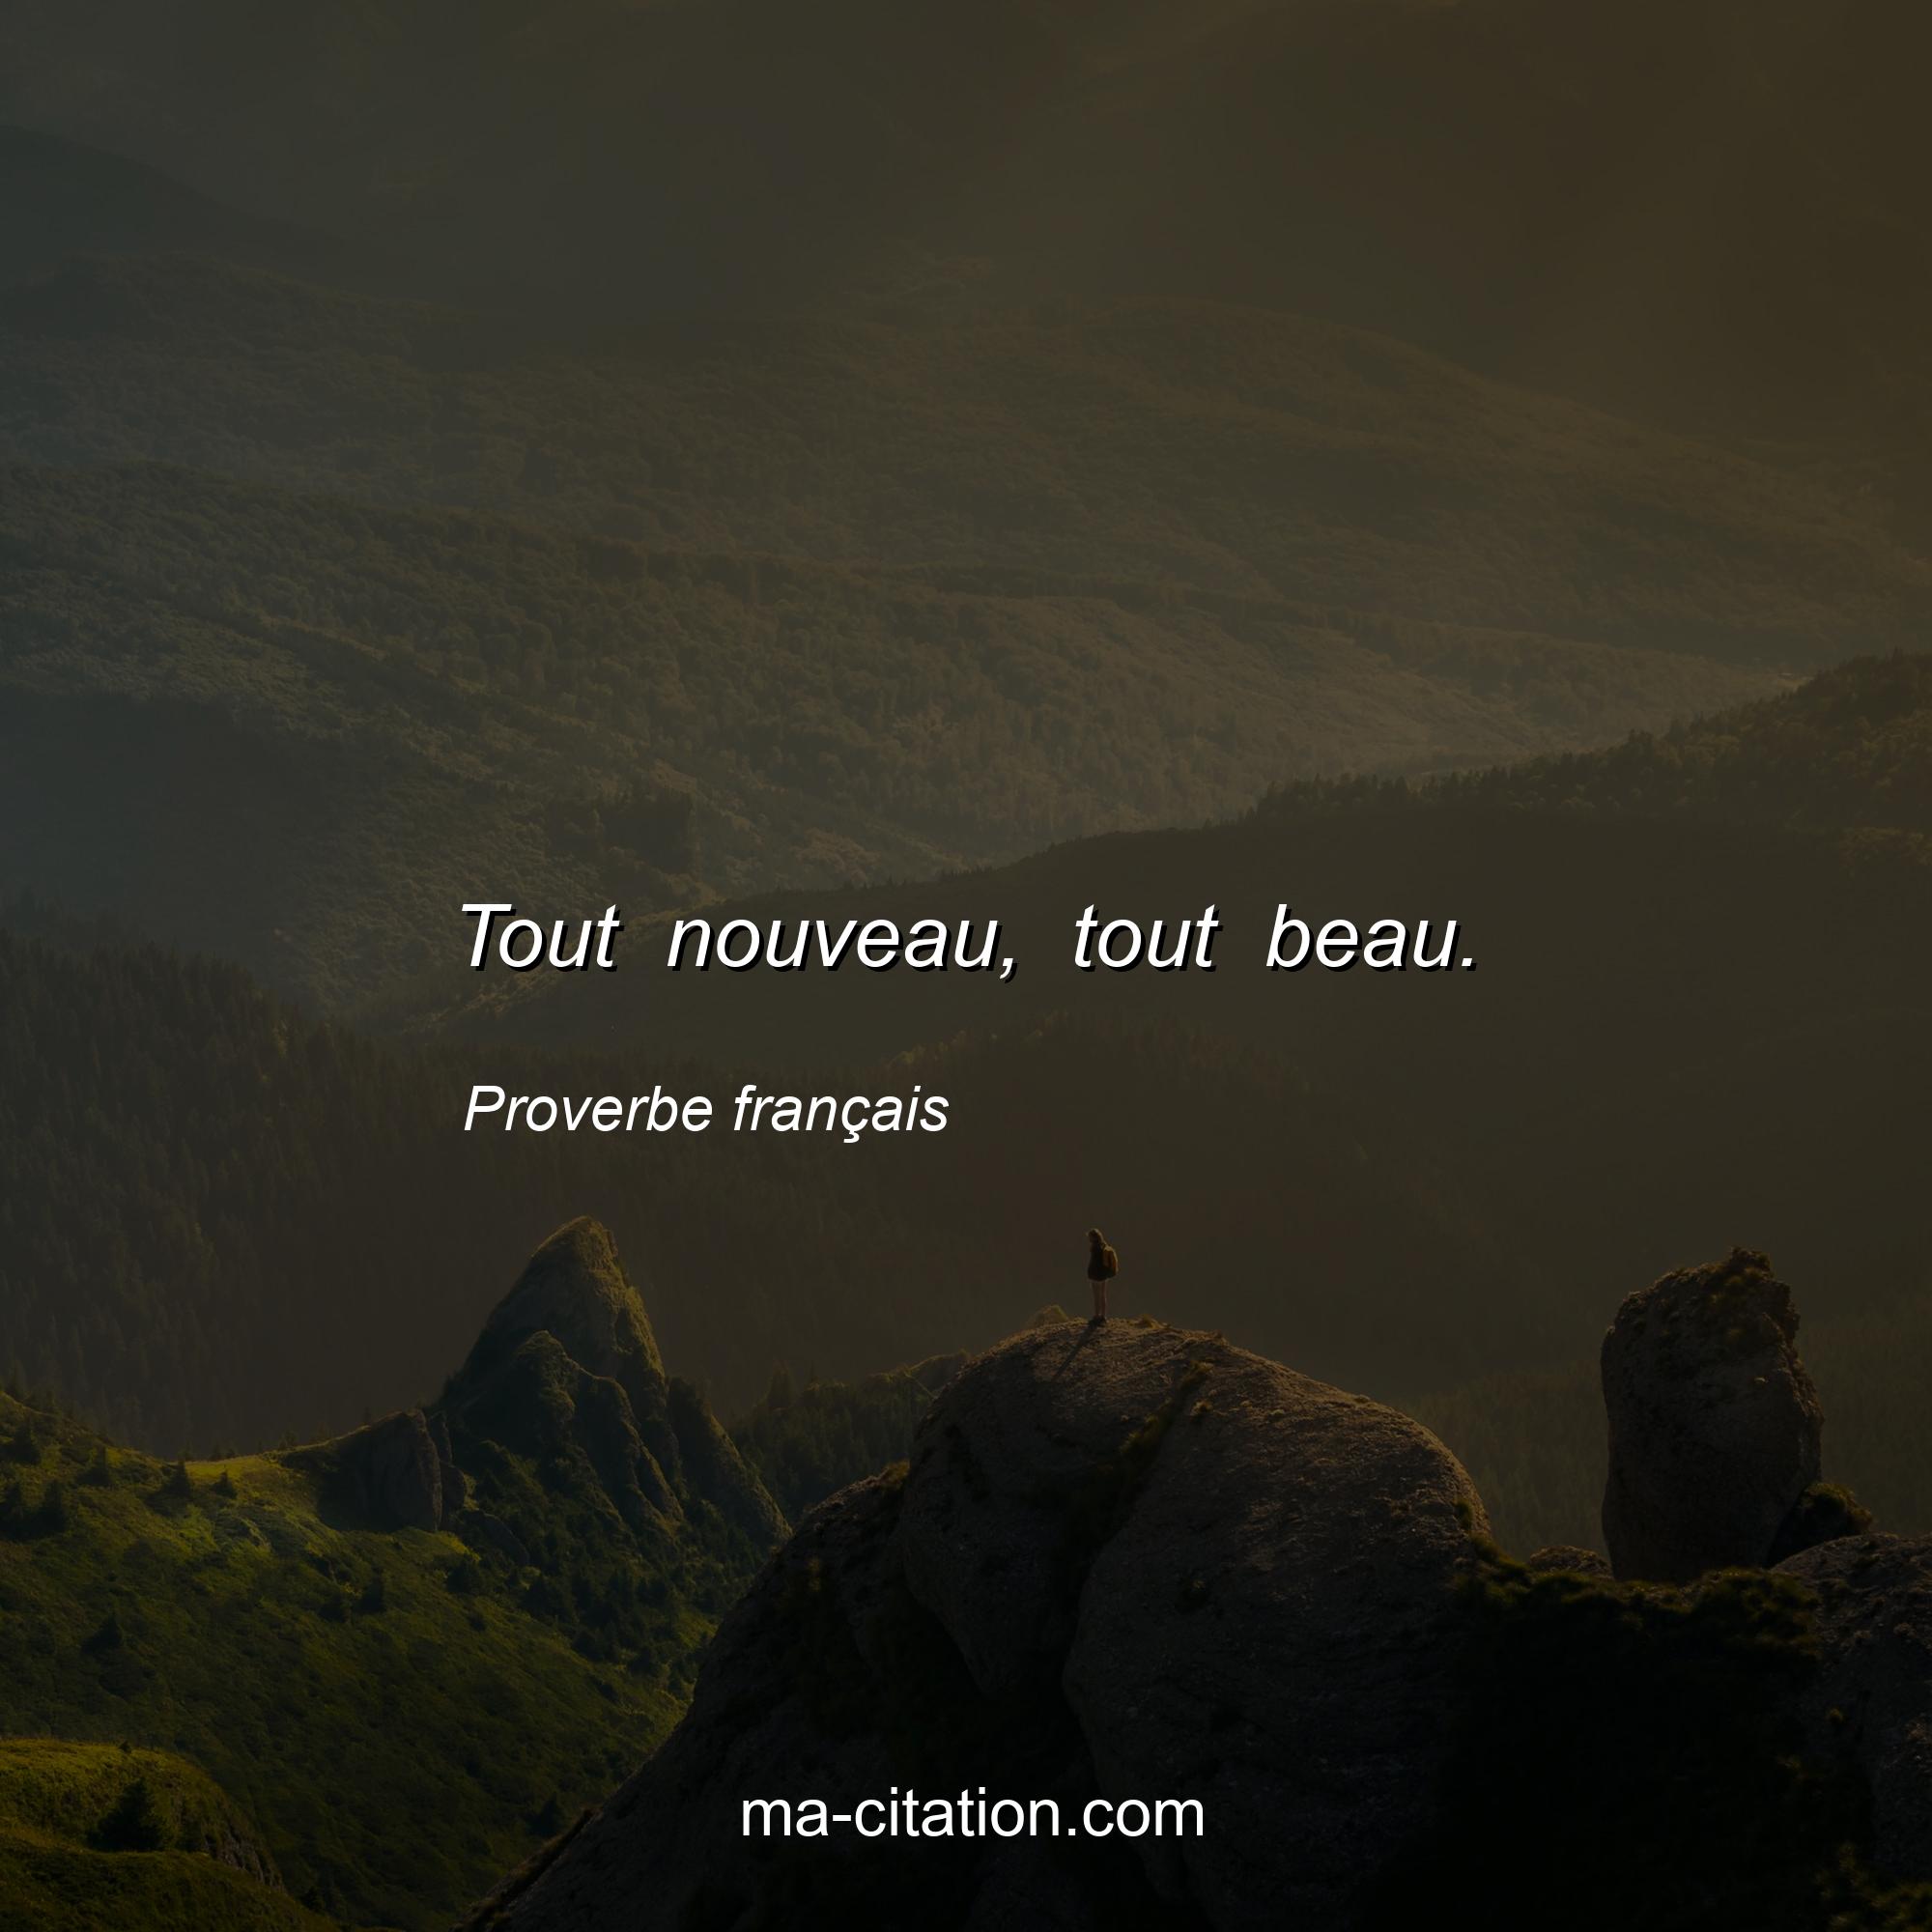 Proverbe français : Tout nouveau, tout beau.